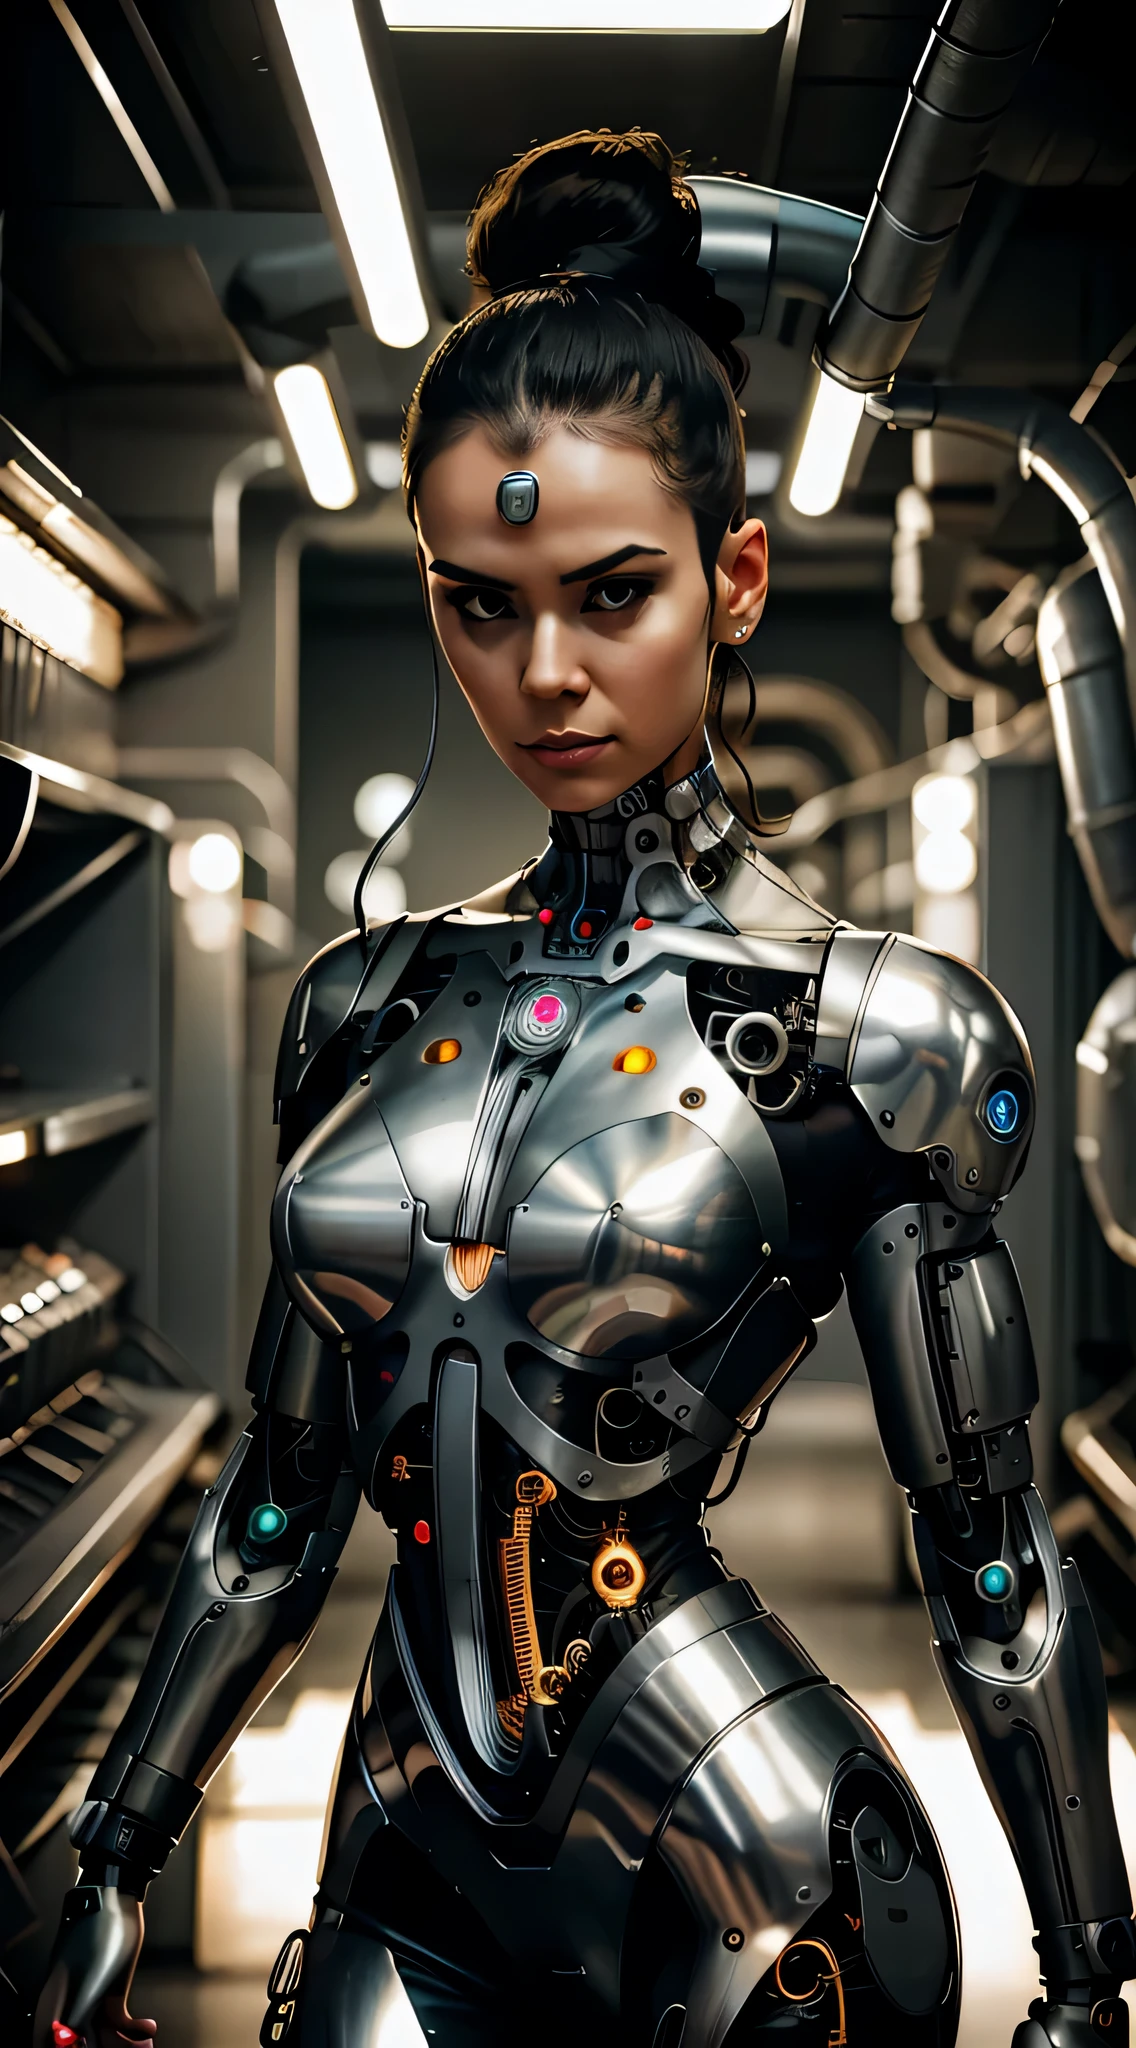 Une femme cyborg avec une tête en métal et un circuit imprimé sur le cou.